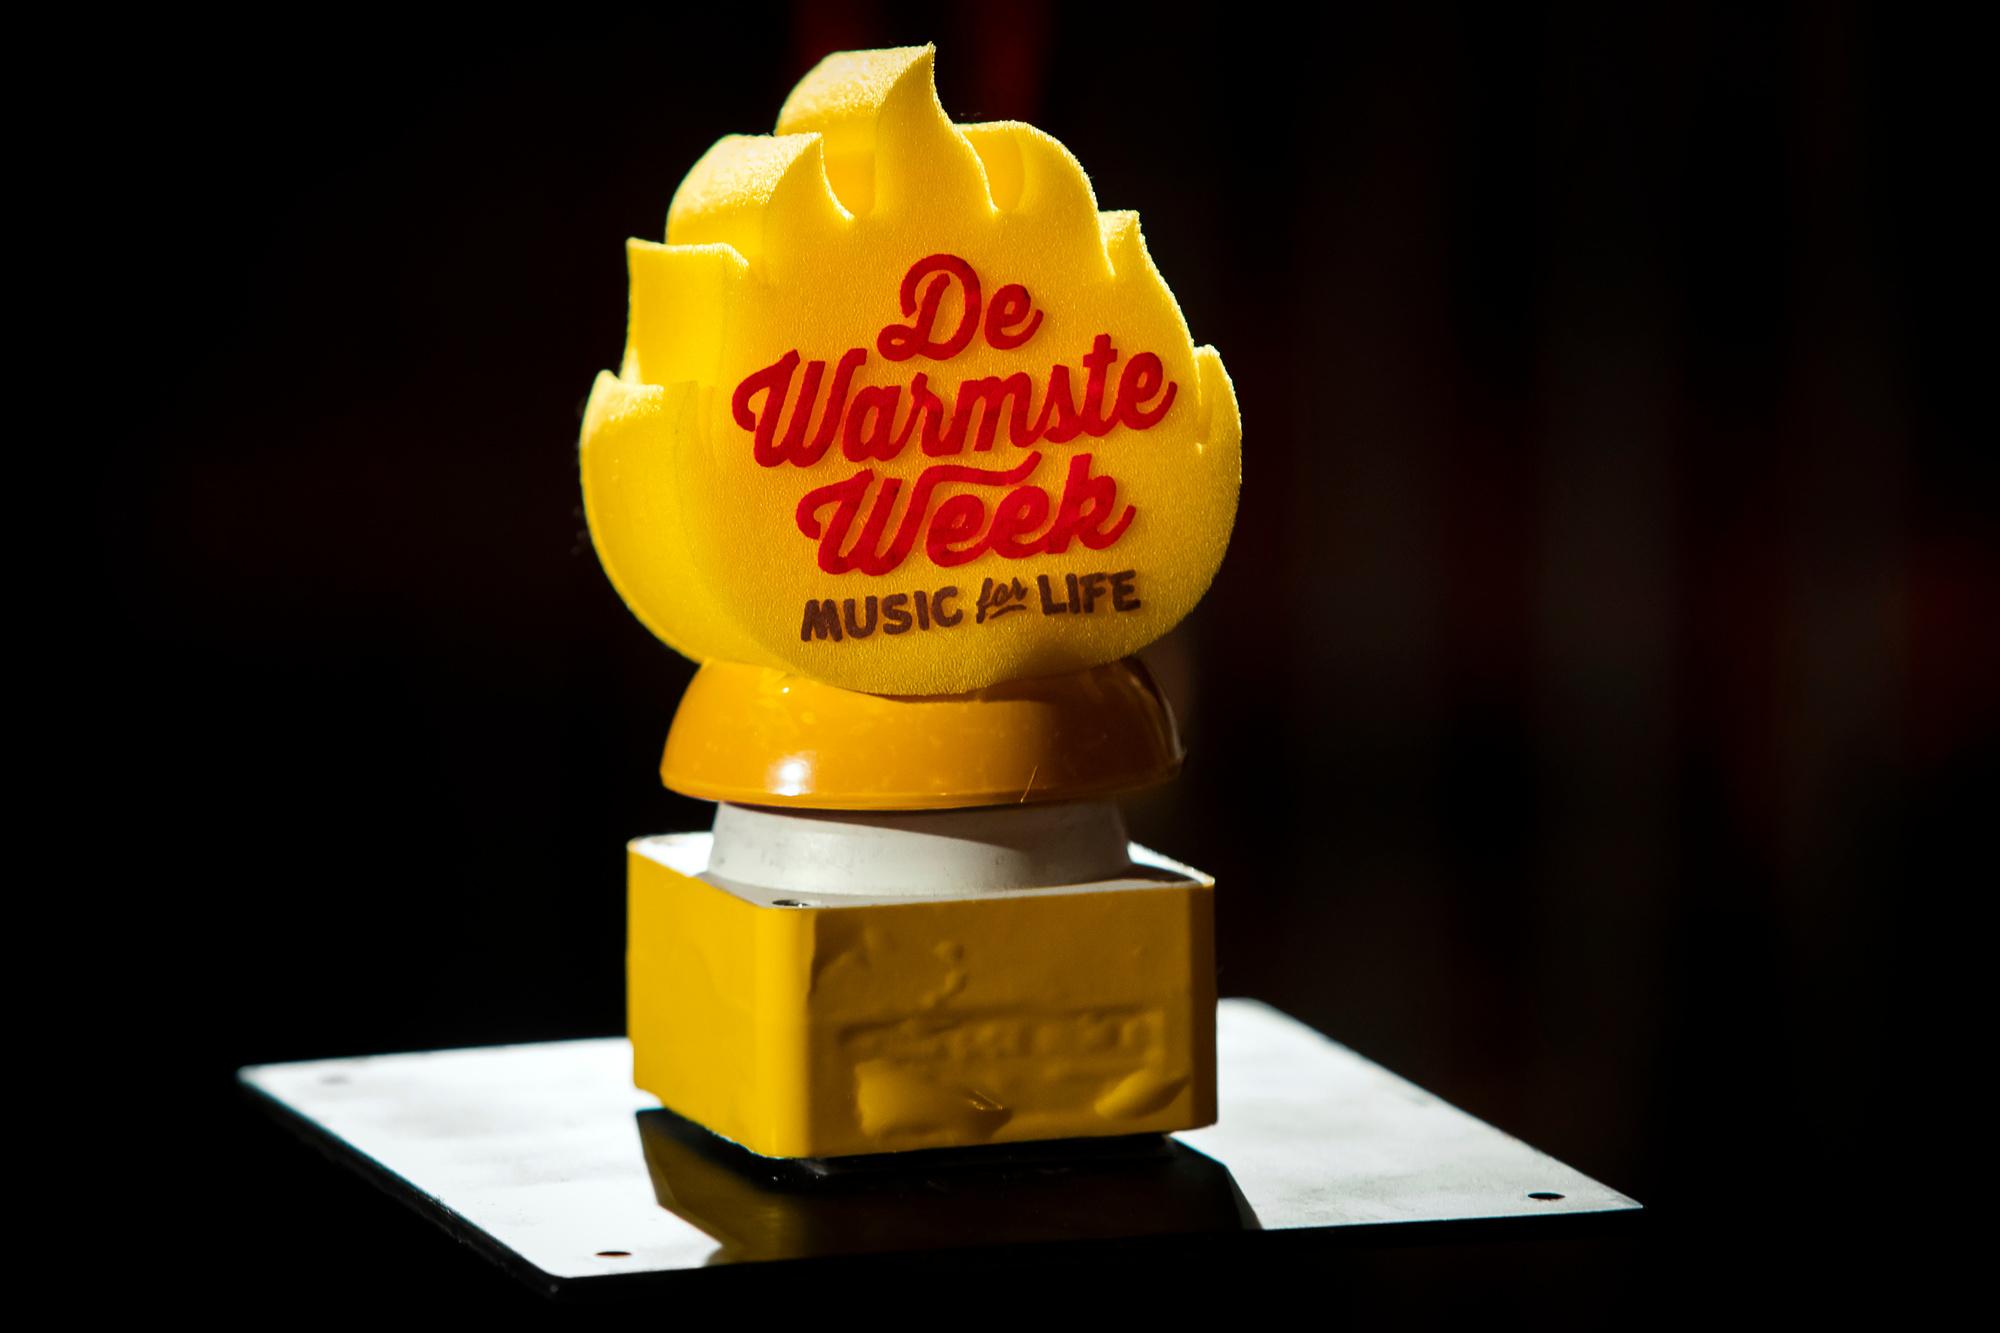 Le trophée de Warmste week (Music for Life).